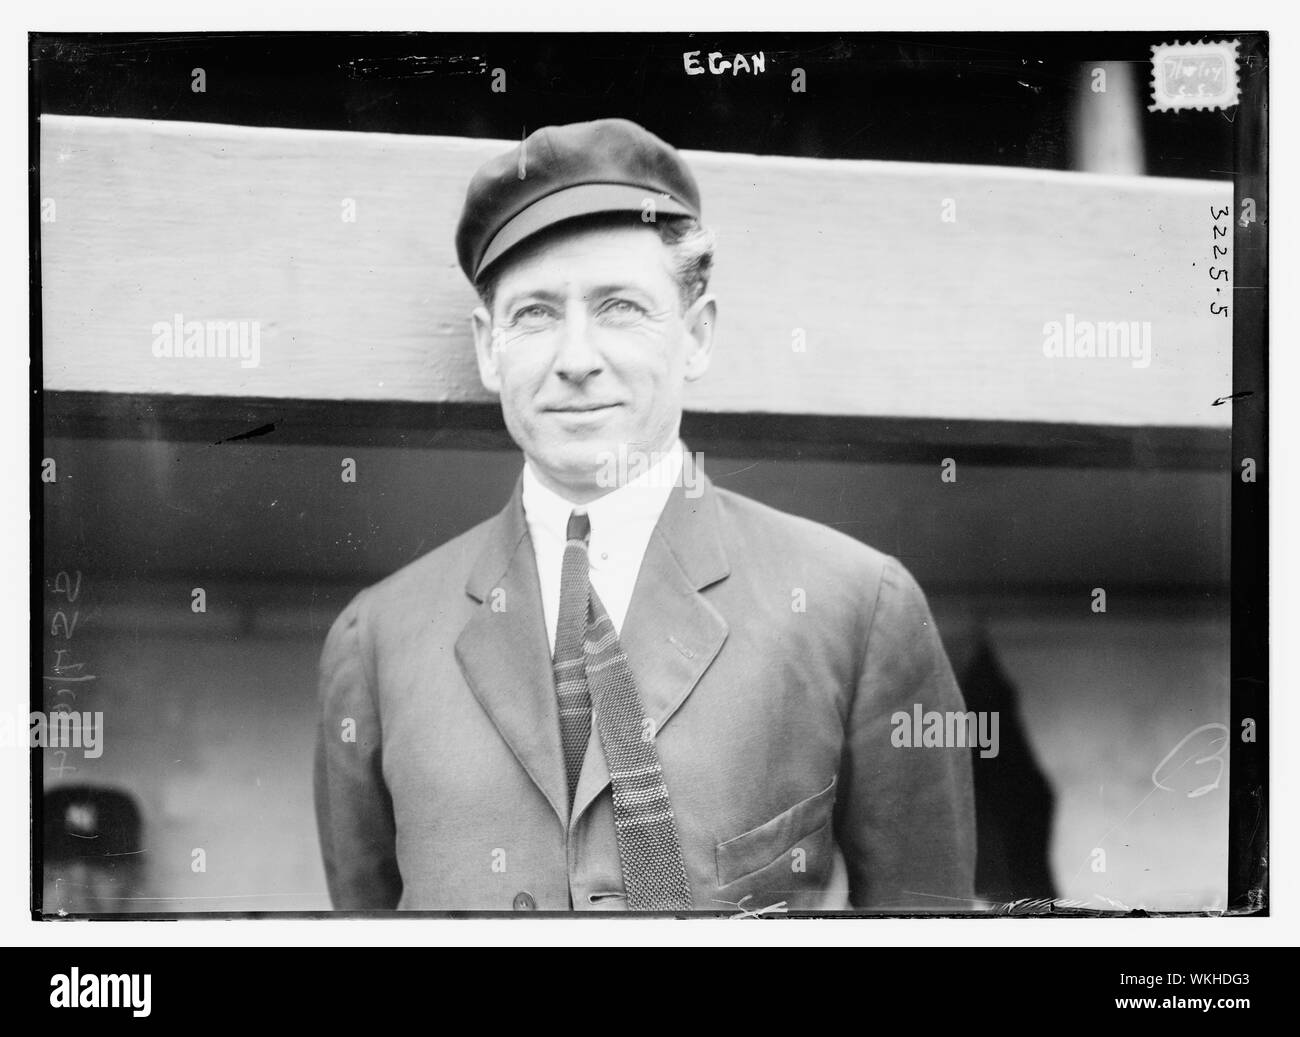 John J. Rip Egan, AL umpire (baseball) Stock Photo